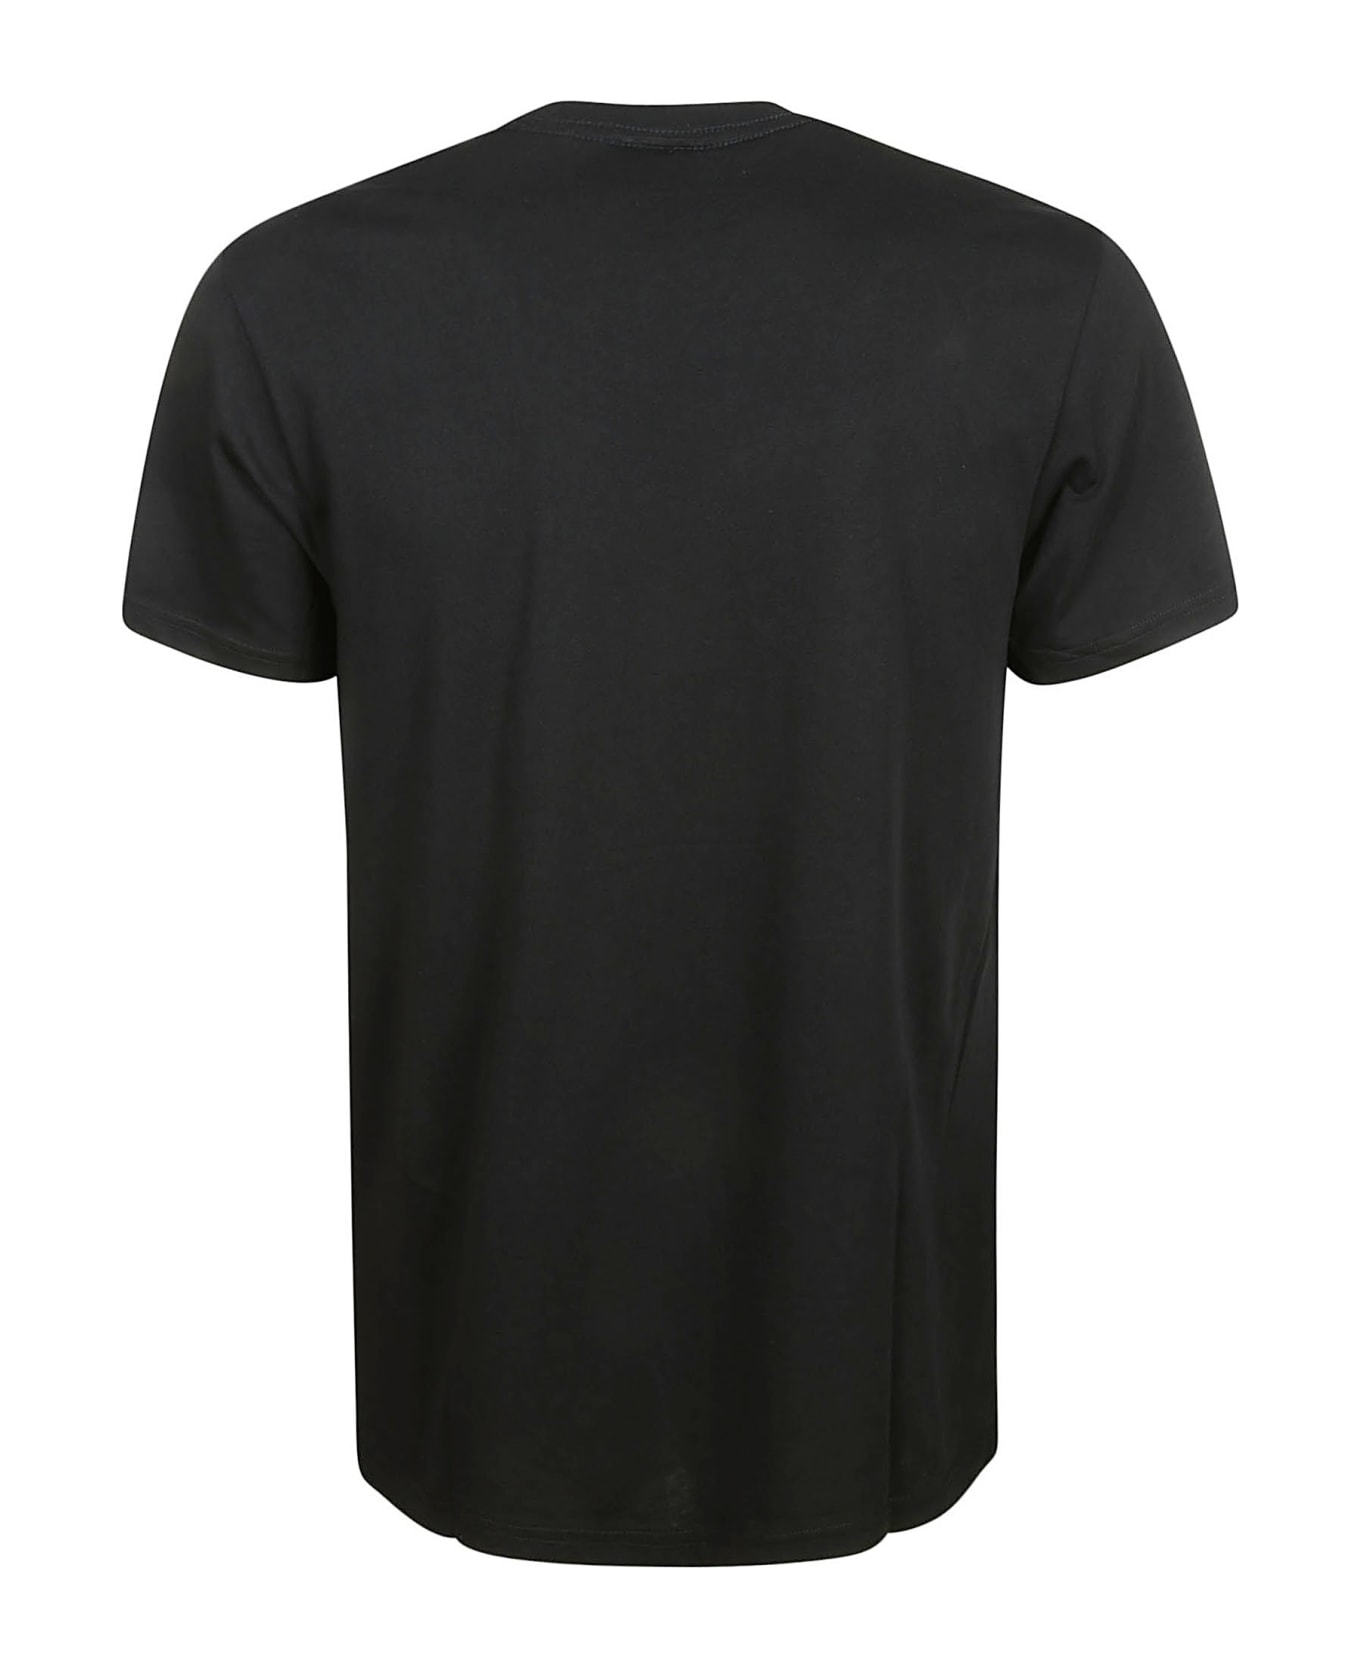 Paul Smith Slim Fit T-shirt B&w Zebra - Very Dark Navy